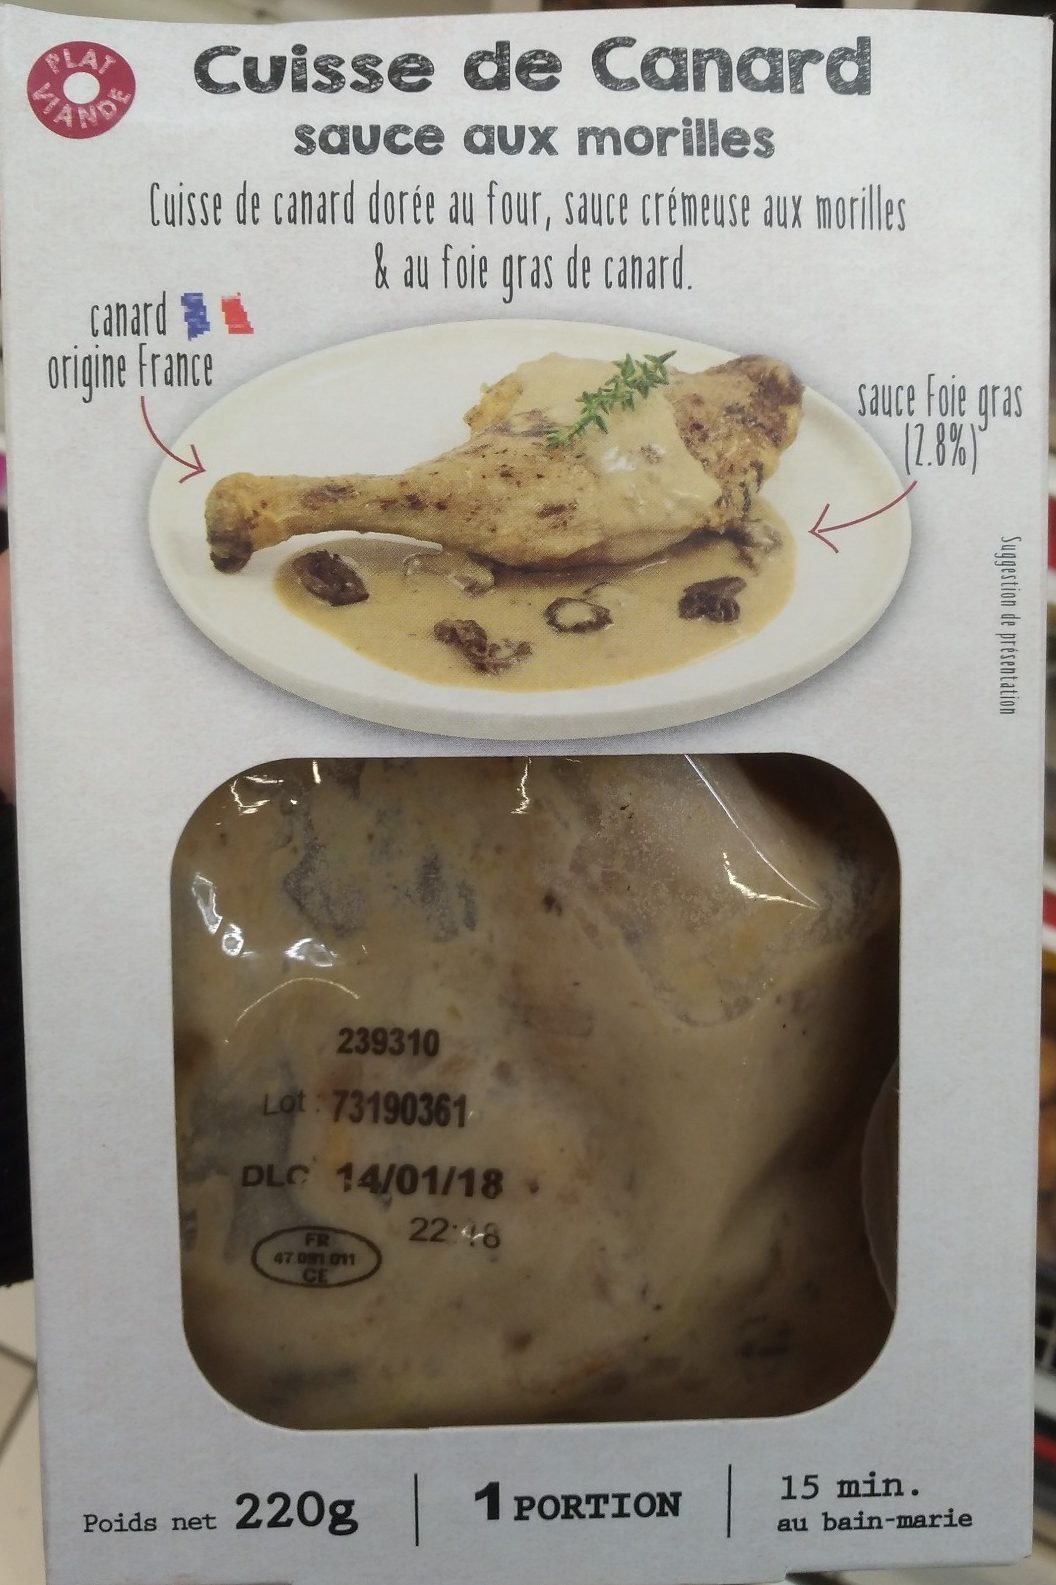 Cuisse de canard sauce aux morilles - Produkt - fr